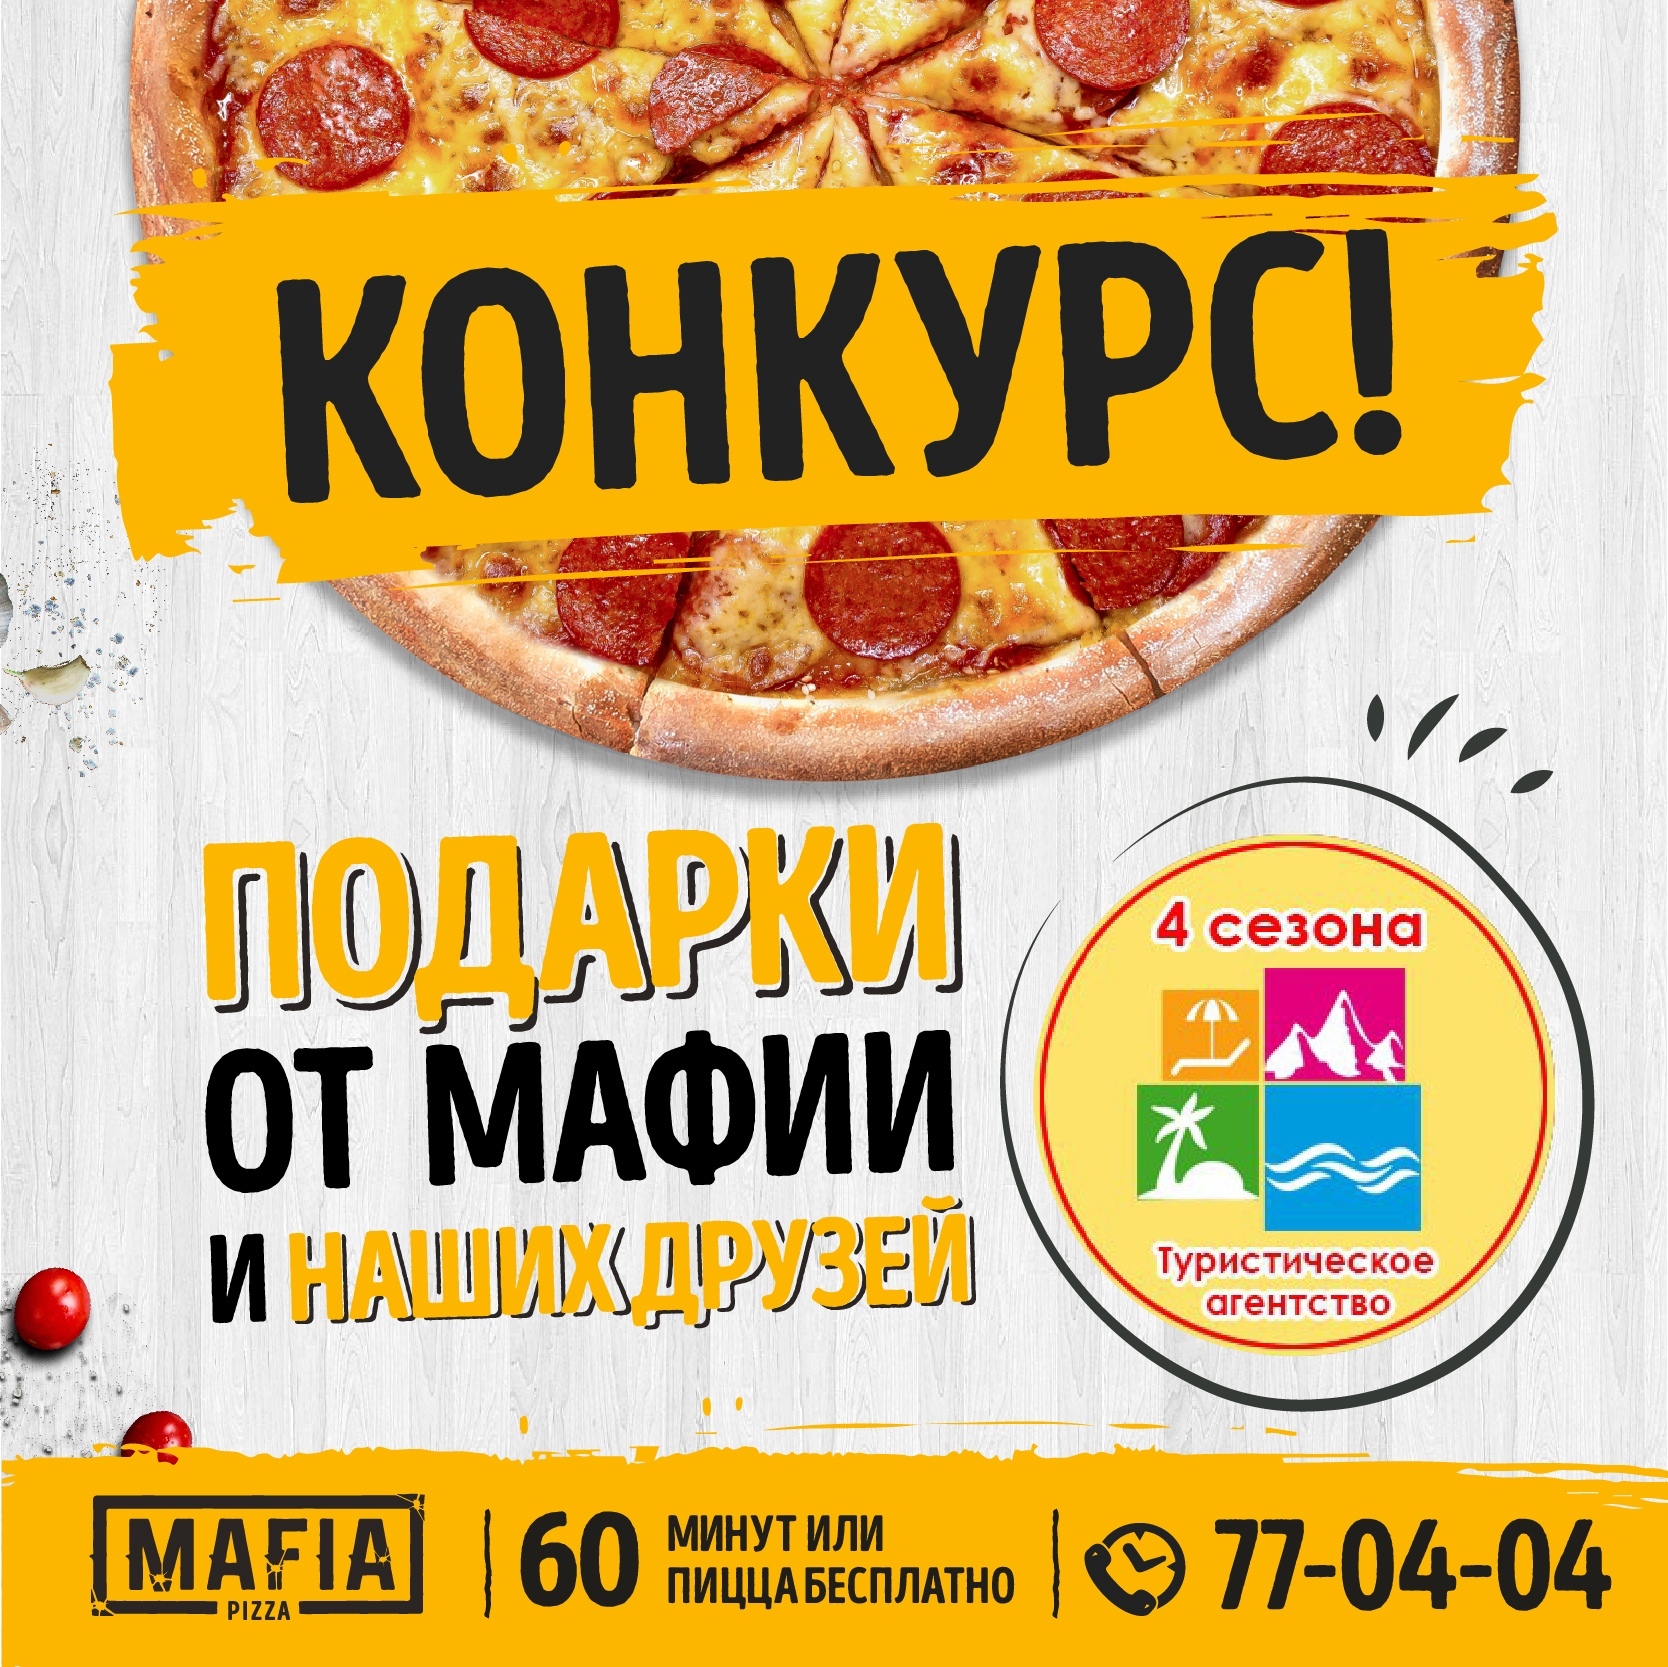 Mafia pizza Курск